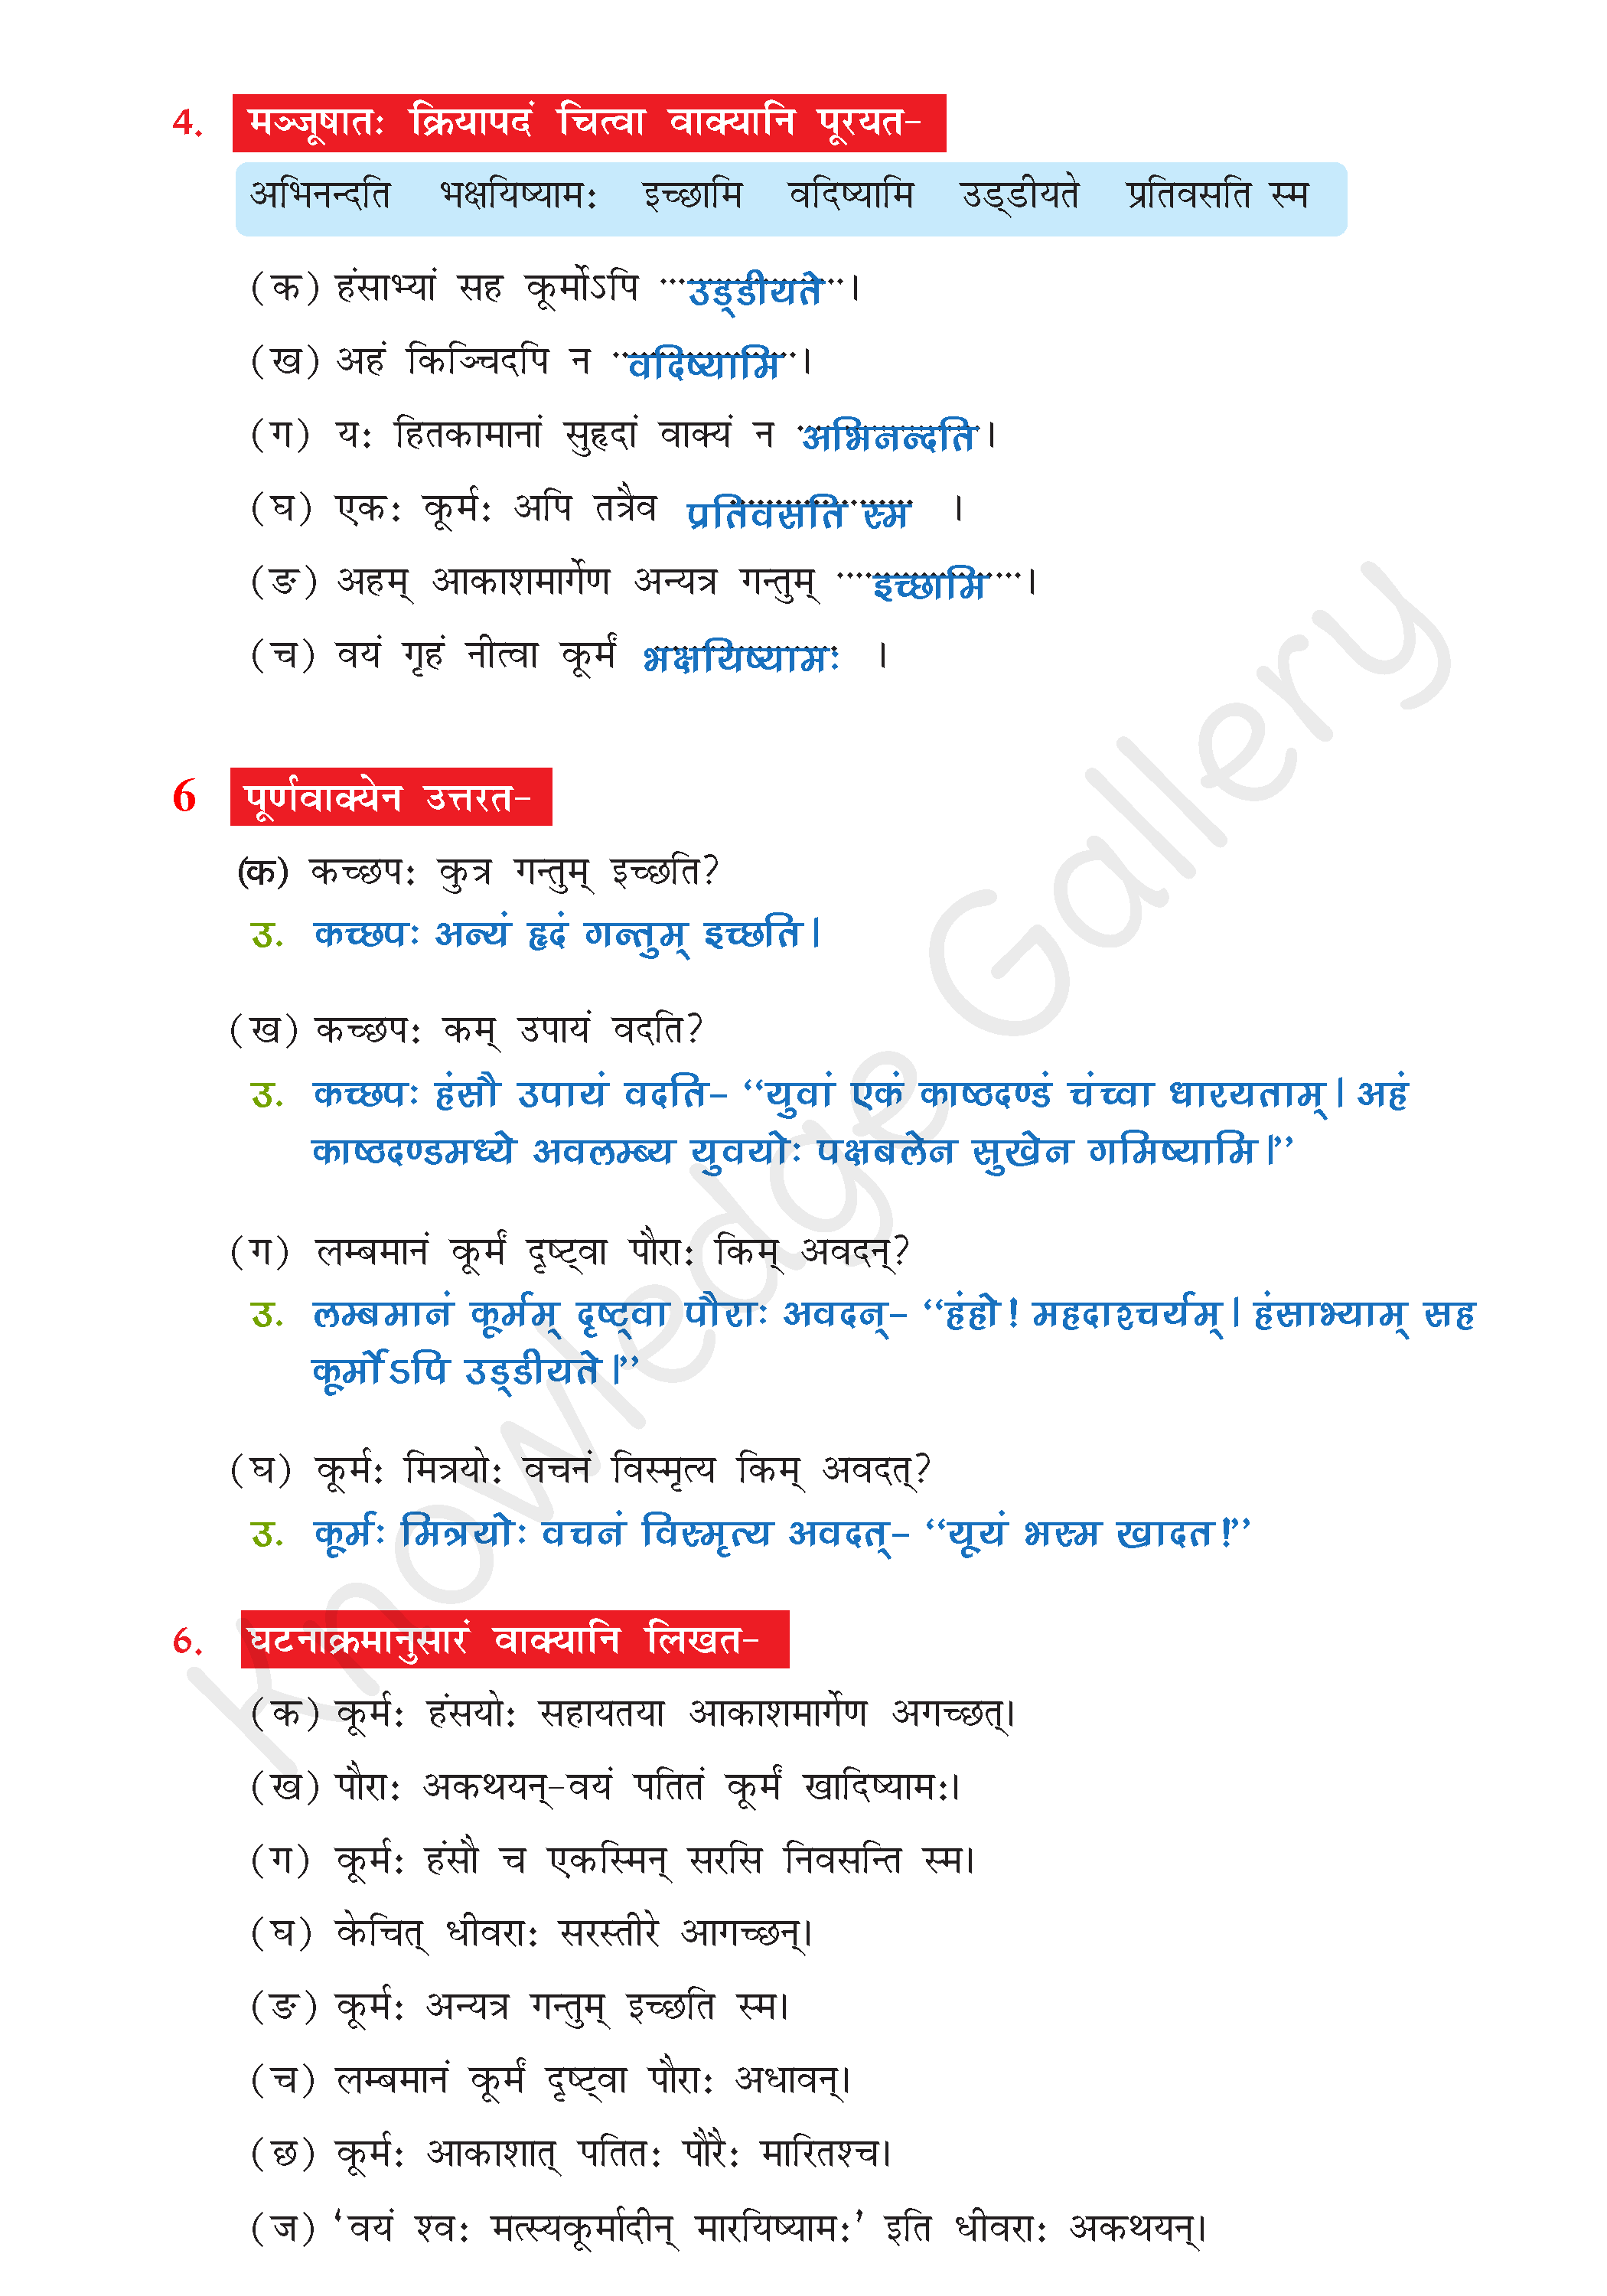 NCERT Solution For Class 7 Sanskrit Chapter 2 part 5